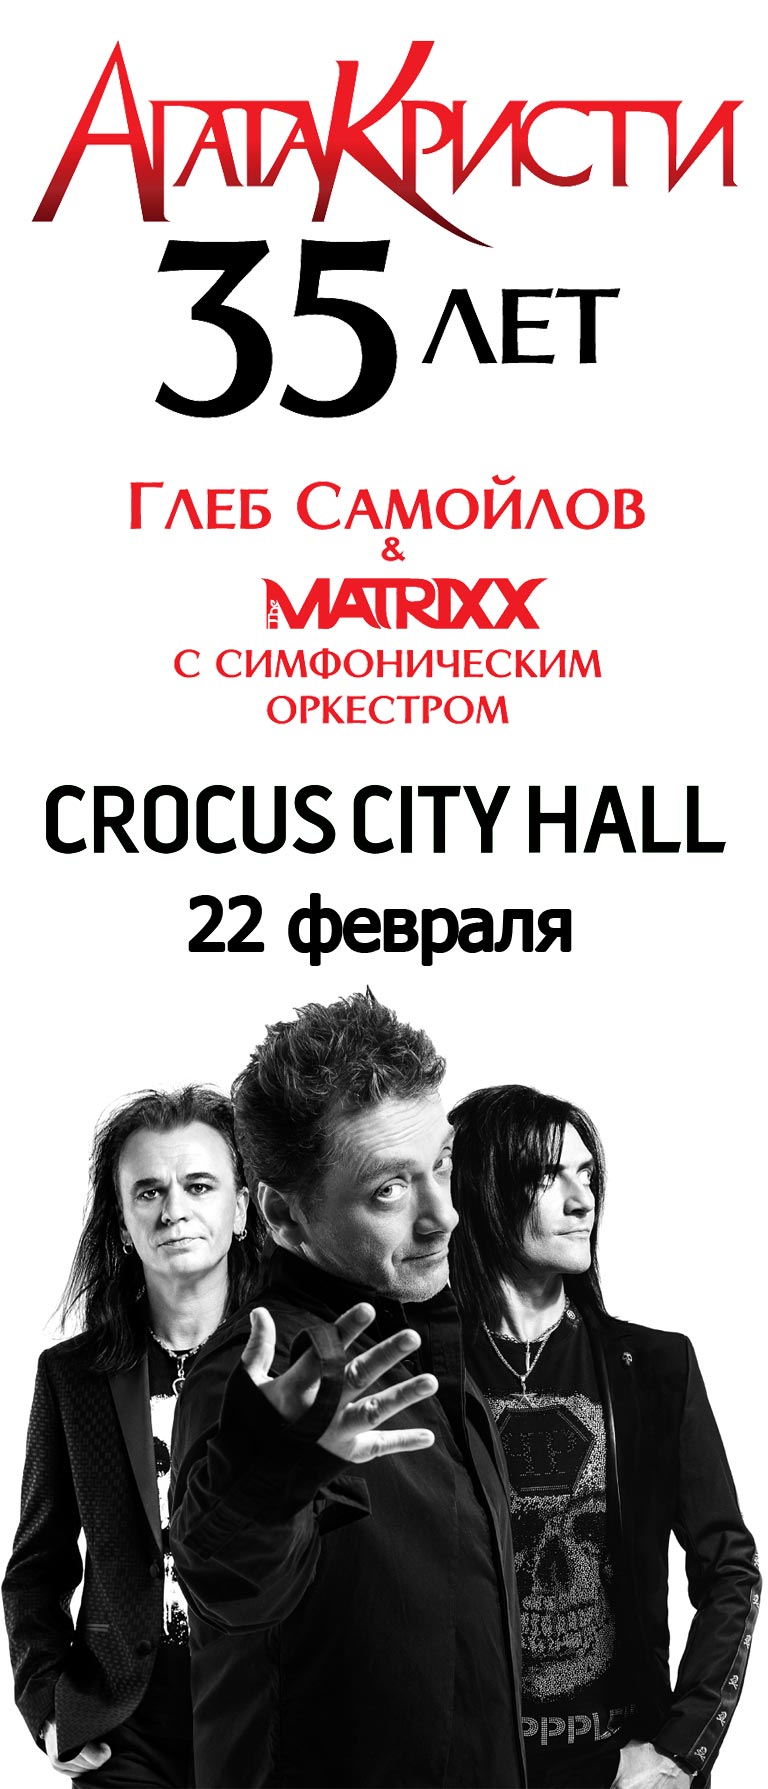 Купить Билеты на концерт Агата Кристи 35 лет, Глеб Самойлов и The Matrixx с оркестром 2023 в Крокус Сити Холл